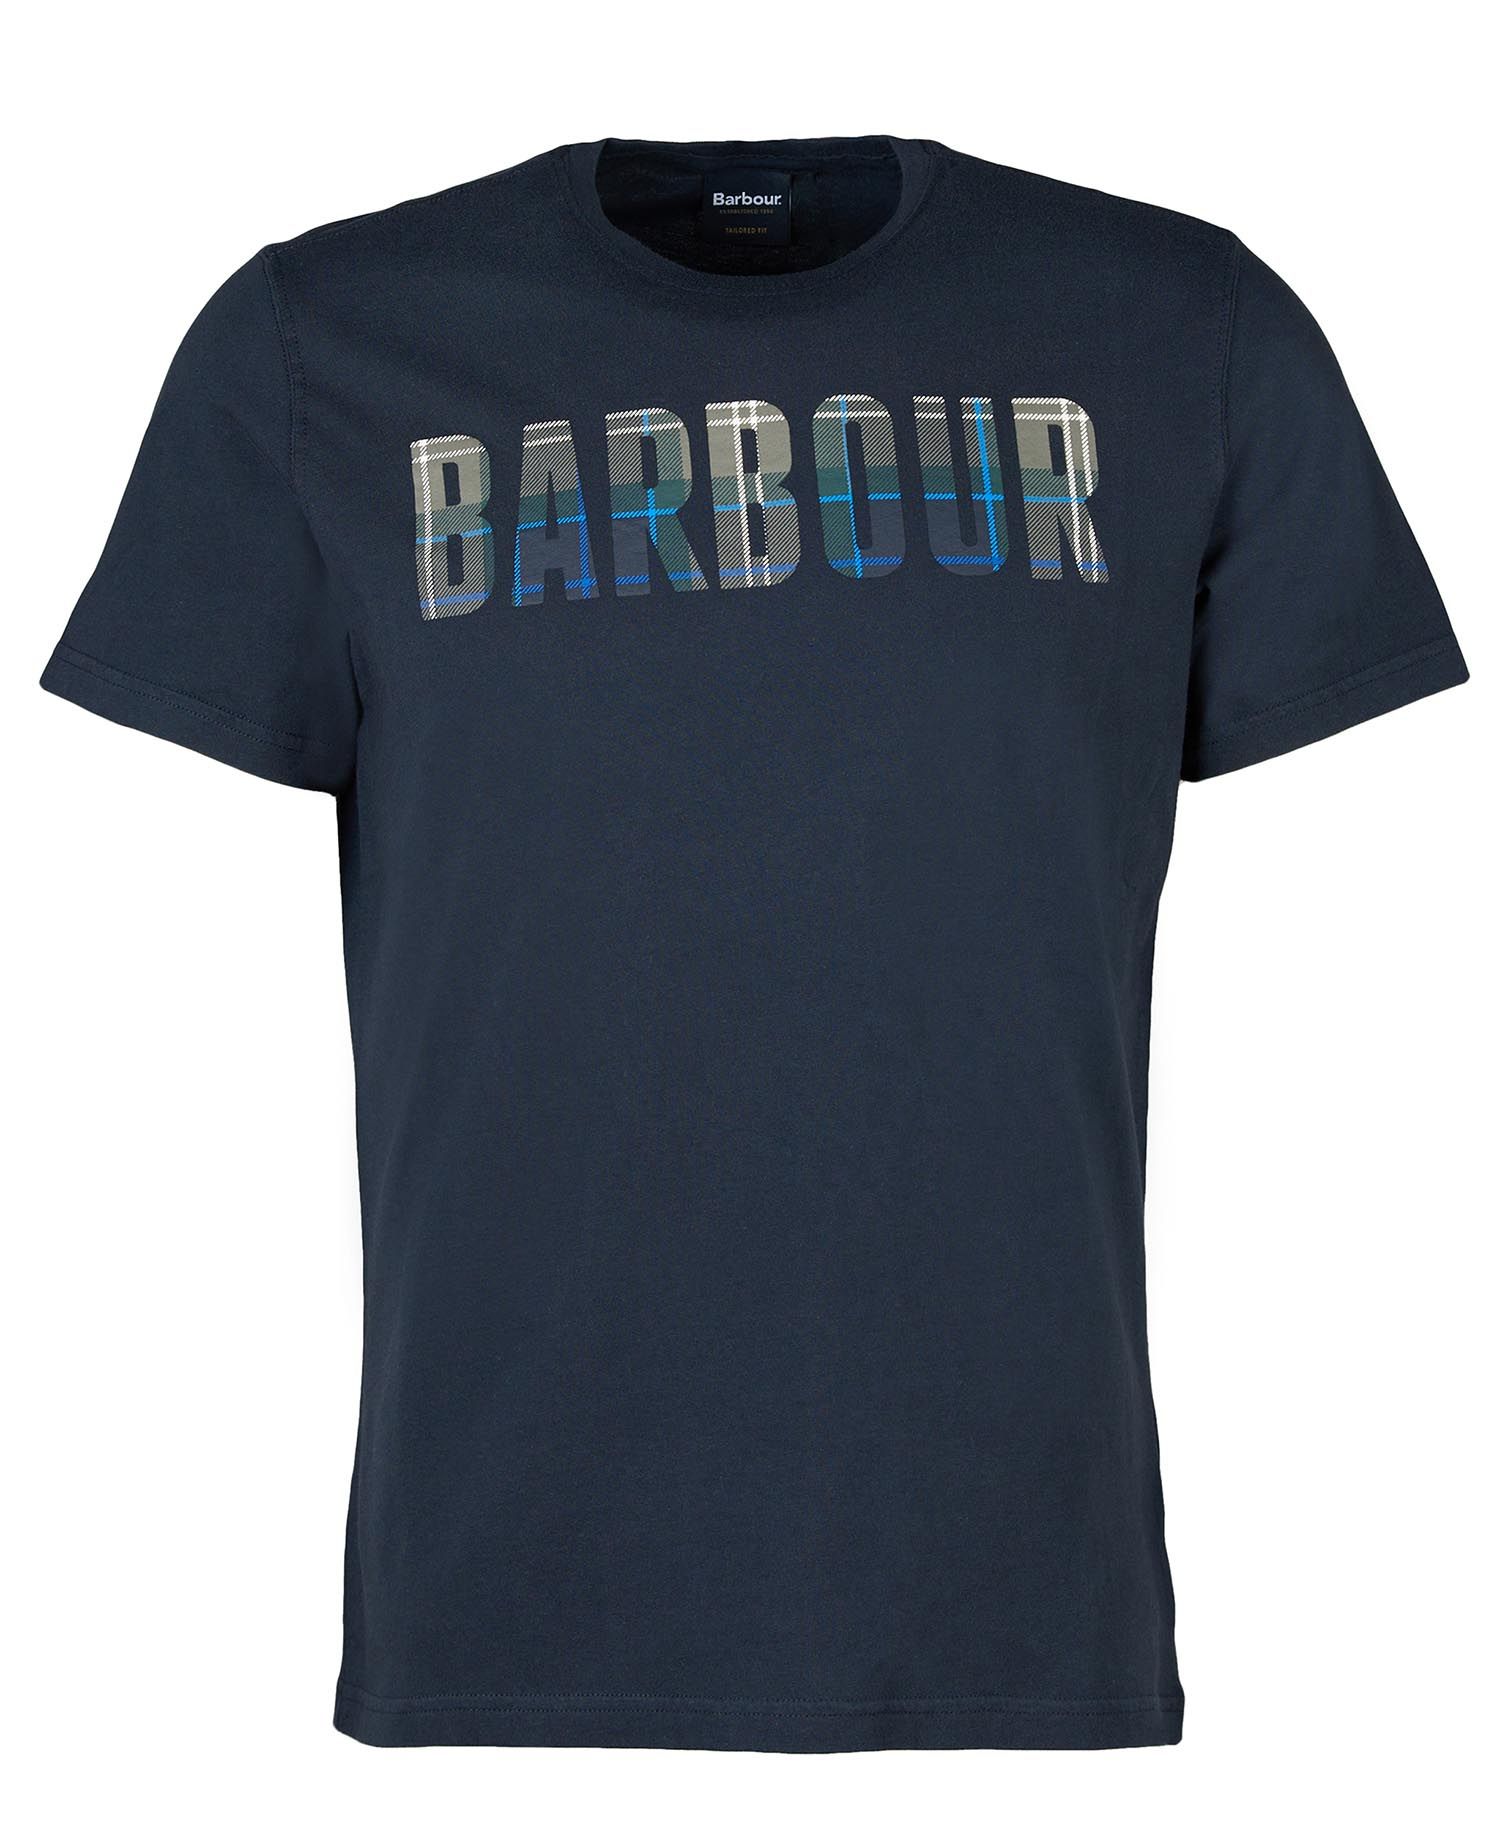 Barbour Barbour Thurso T-shirt Navy Kielder